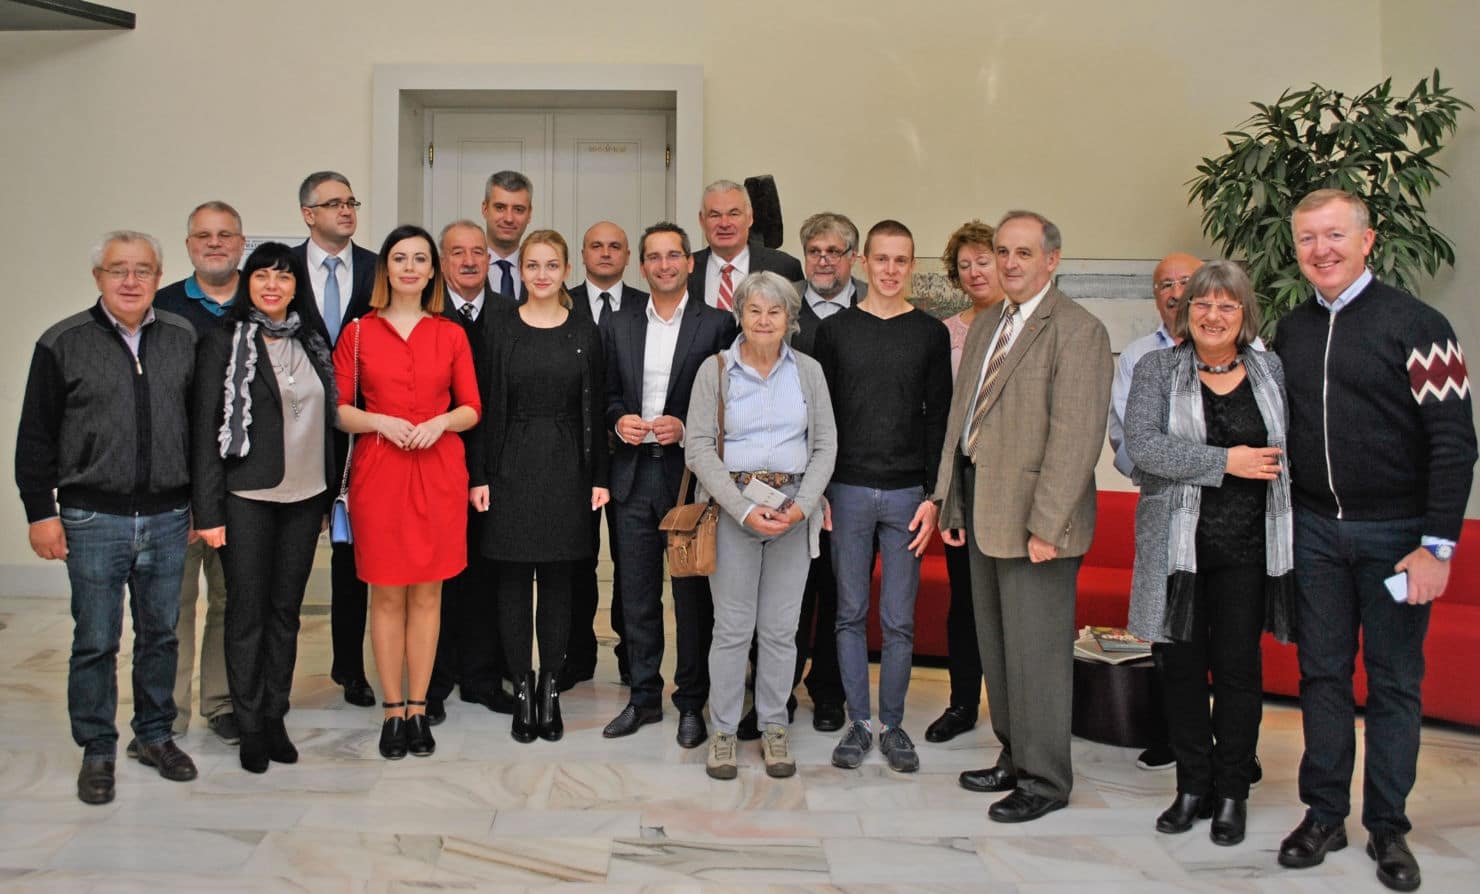 Die Teilnehmer des Europäischen Volksgruppenkongresses wurden
offiziell im Rathaus empfangen.